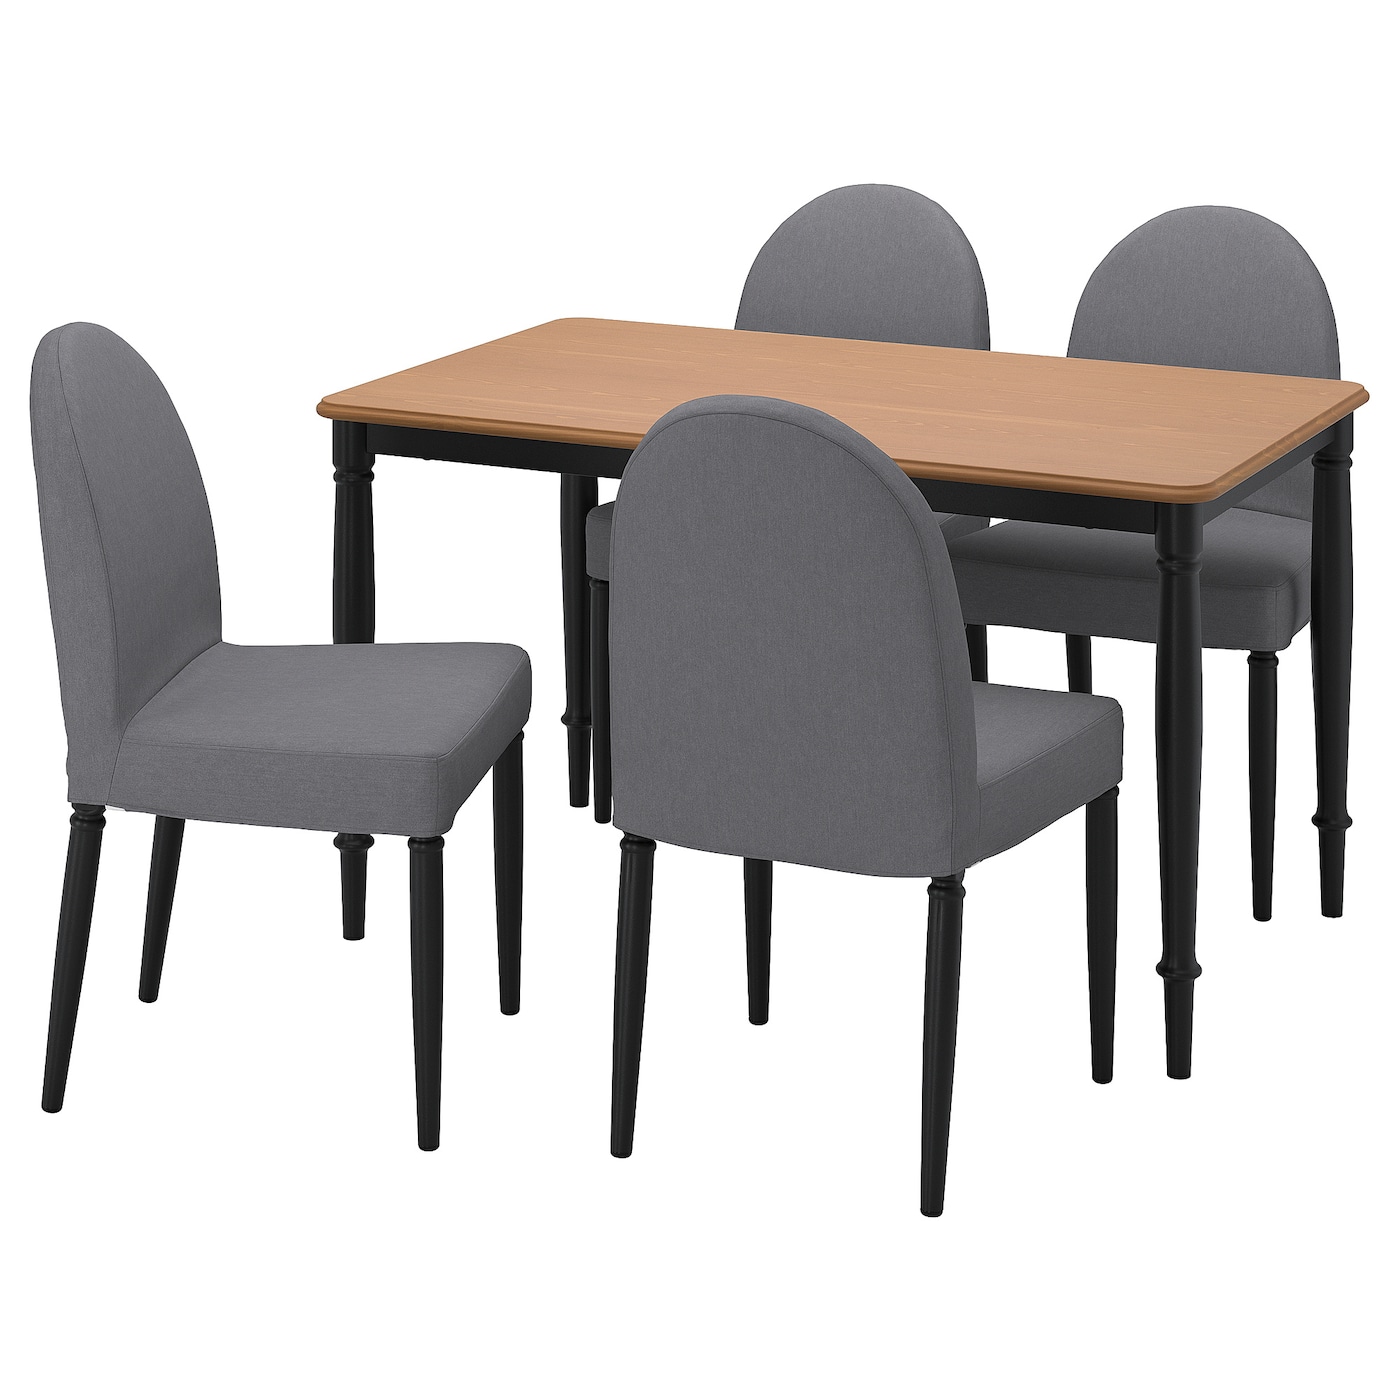 Стол и 4 стула - DANDERYD / DANDERYD IKEA/ ДАНДЕРИД ИКЕА, 130х80х75 см, бежевый/серый